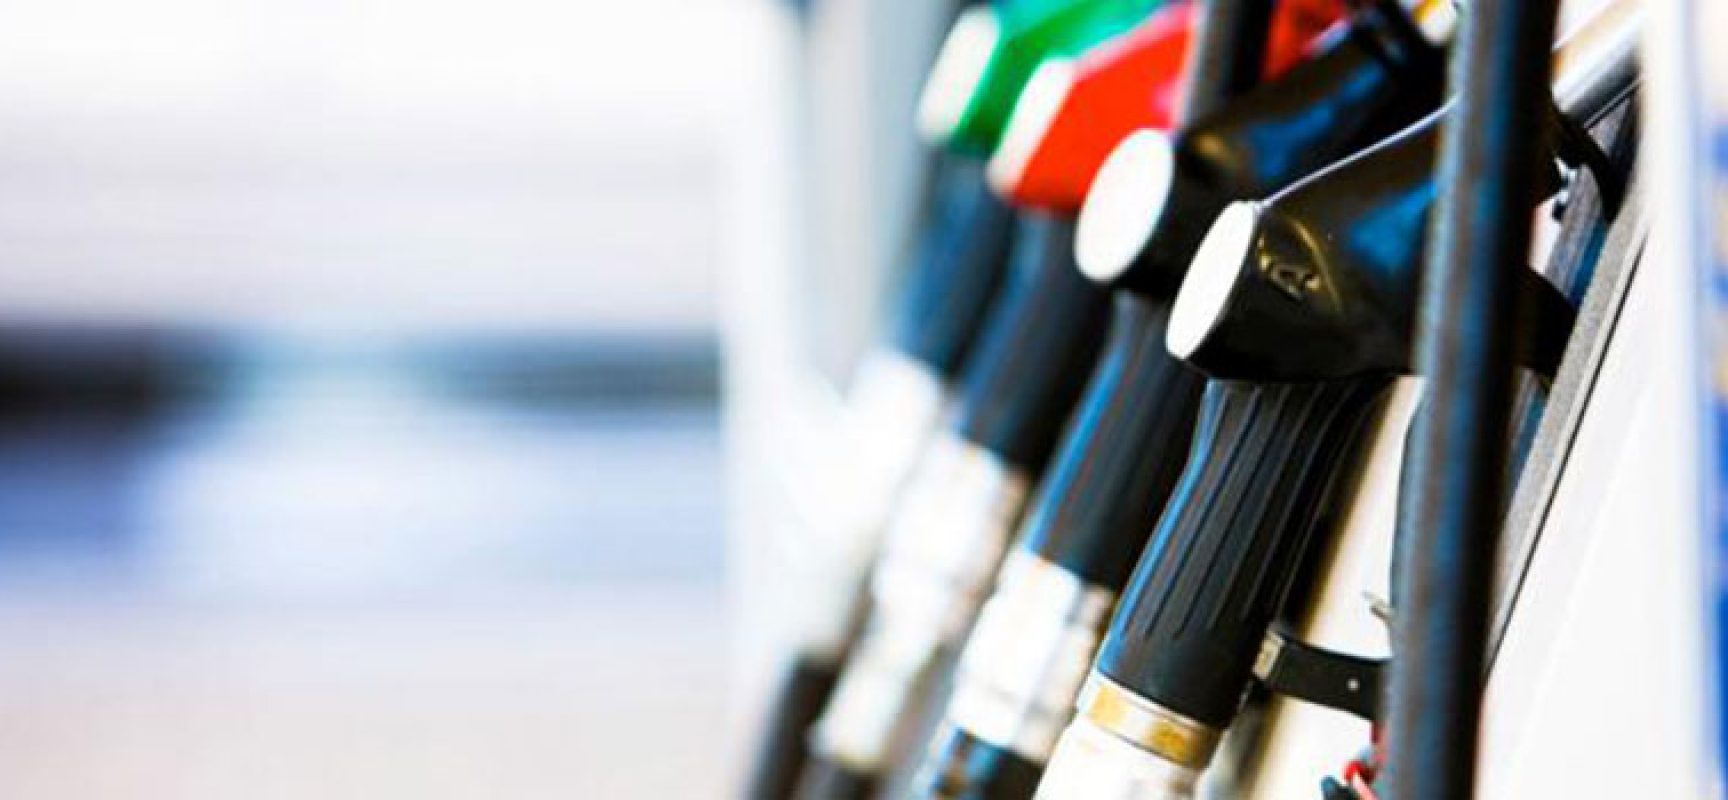 Mancata comunicazione prezzi carburanti, sanzionati tre impianti a Bisceglie